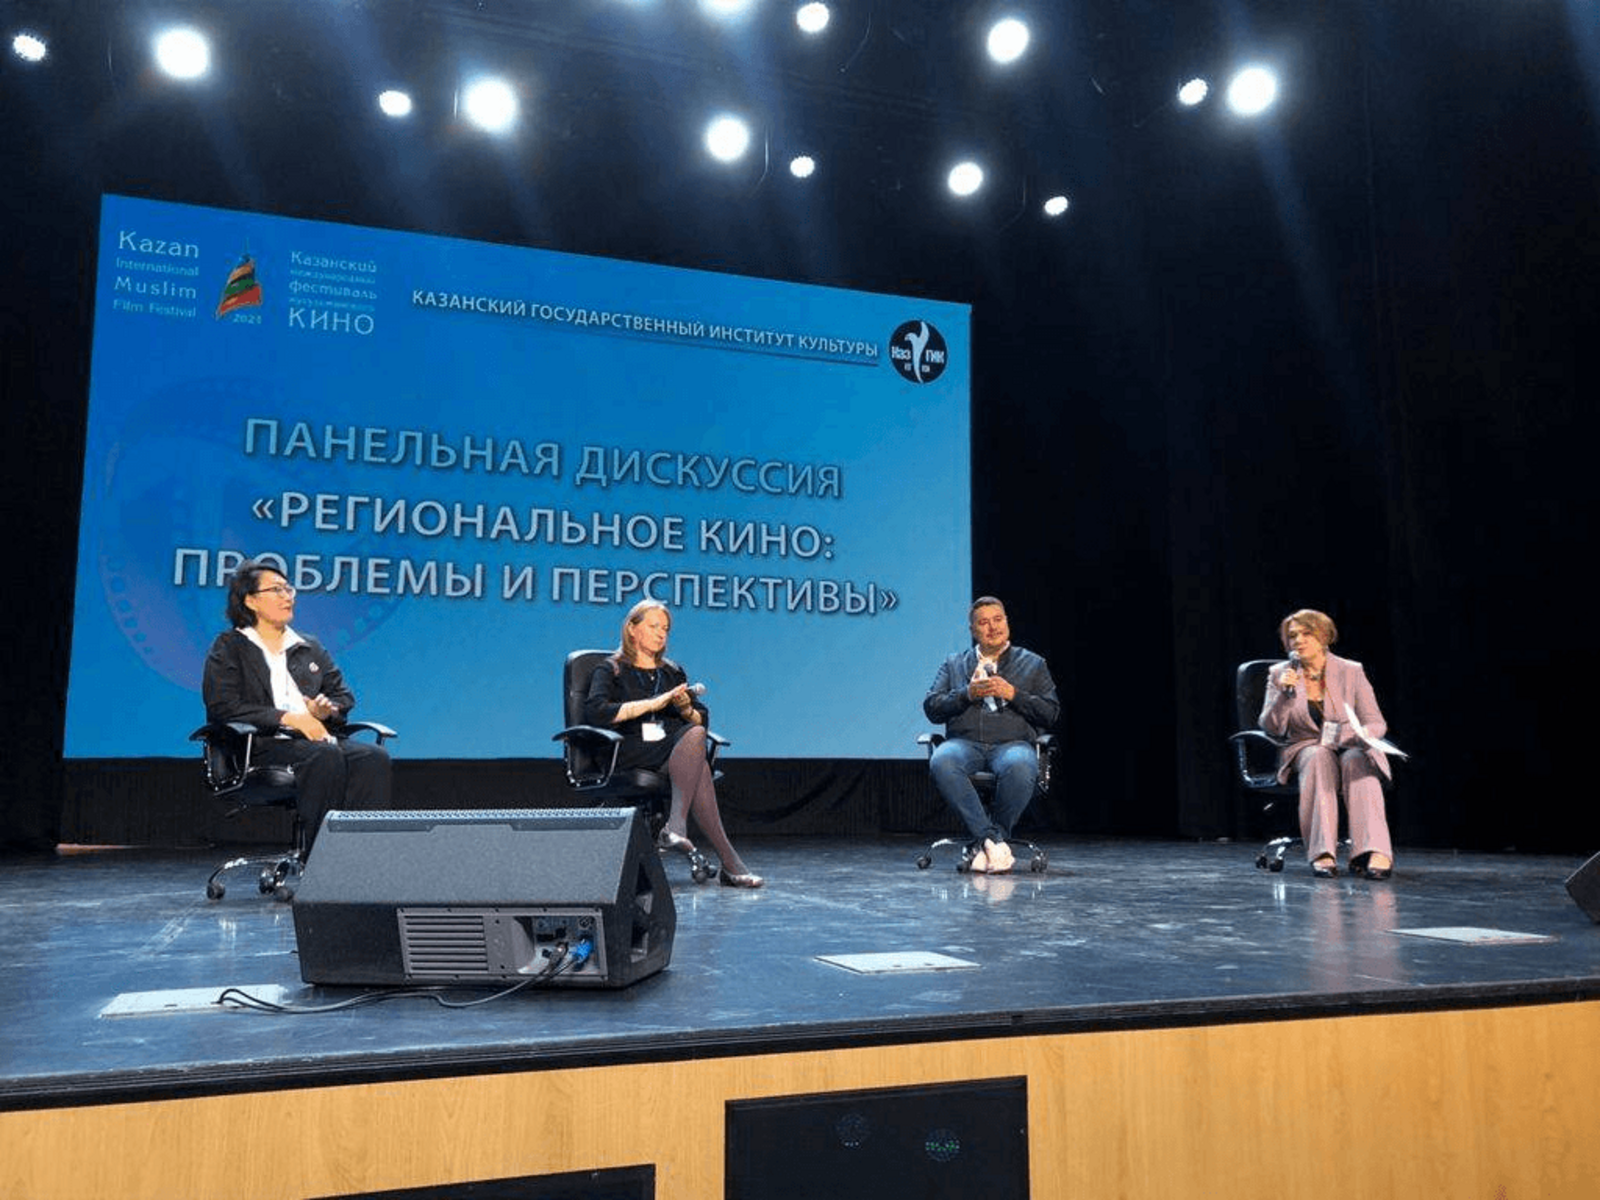 Киностудия «Башкортостан» имени А. Абдразакова приняла участие в международном фестивале мусульманского кино